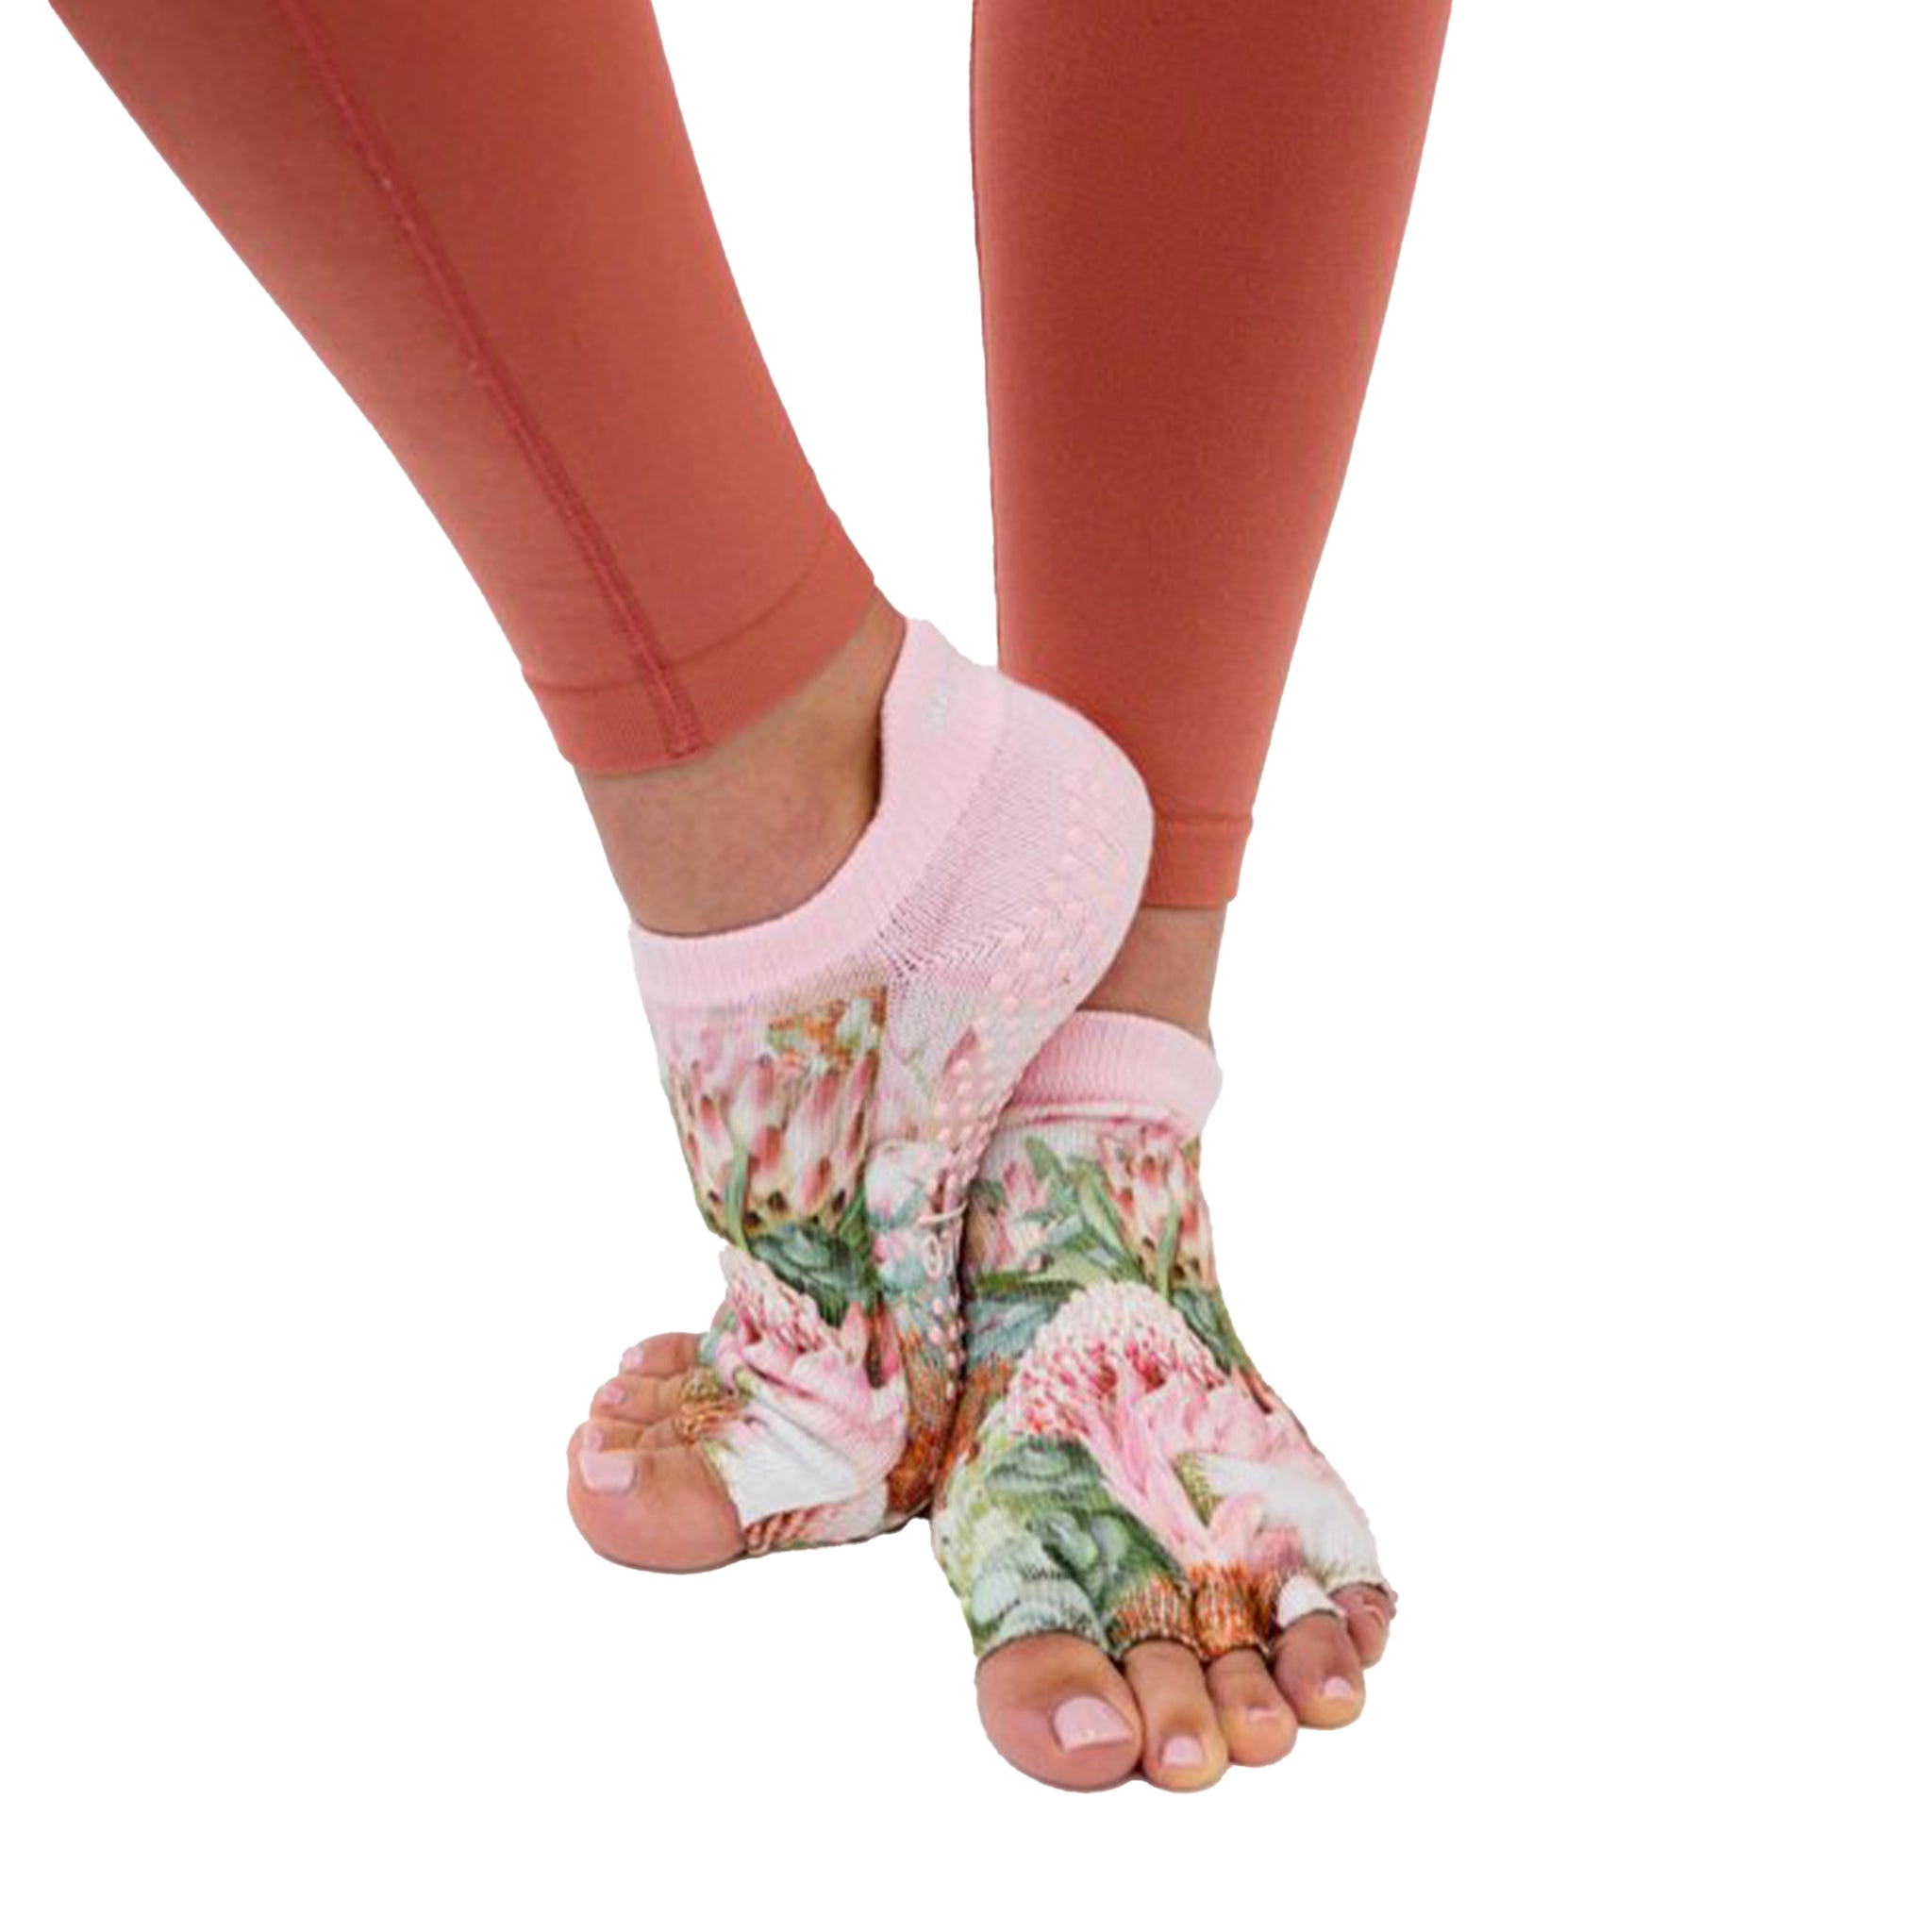 Toeless Yoga Socks For Women Pilates Socks With Grips Cotton Non